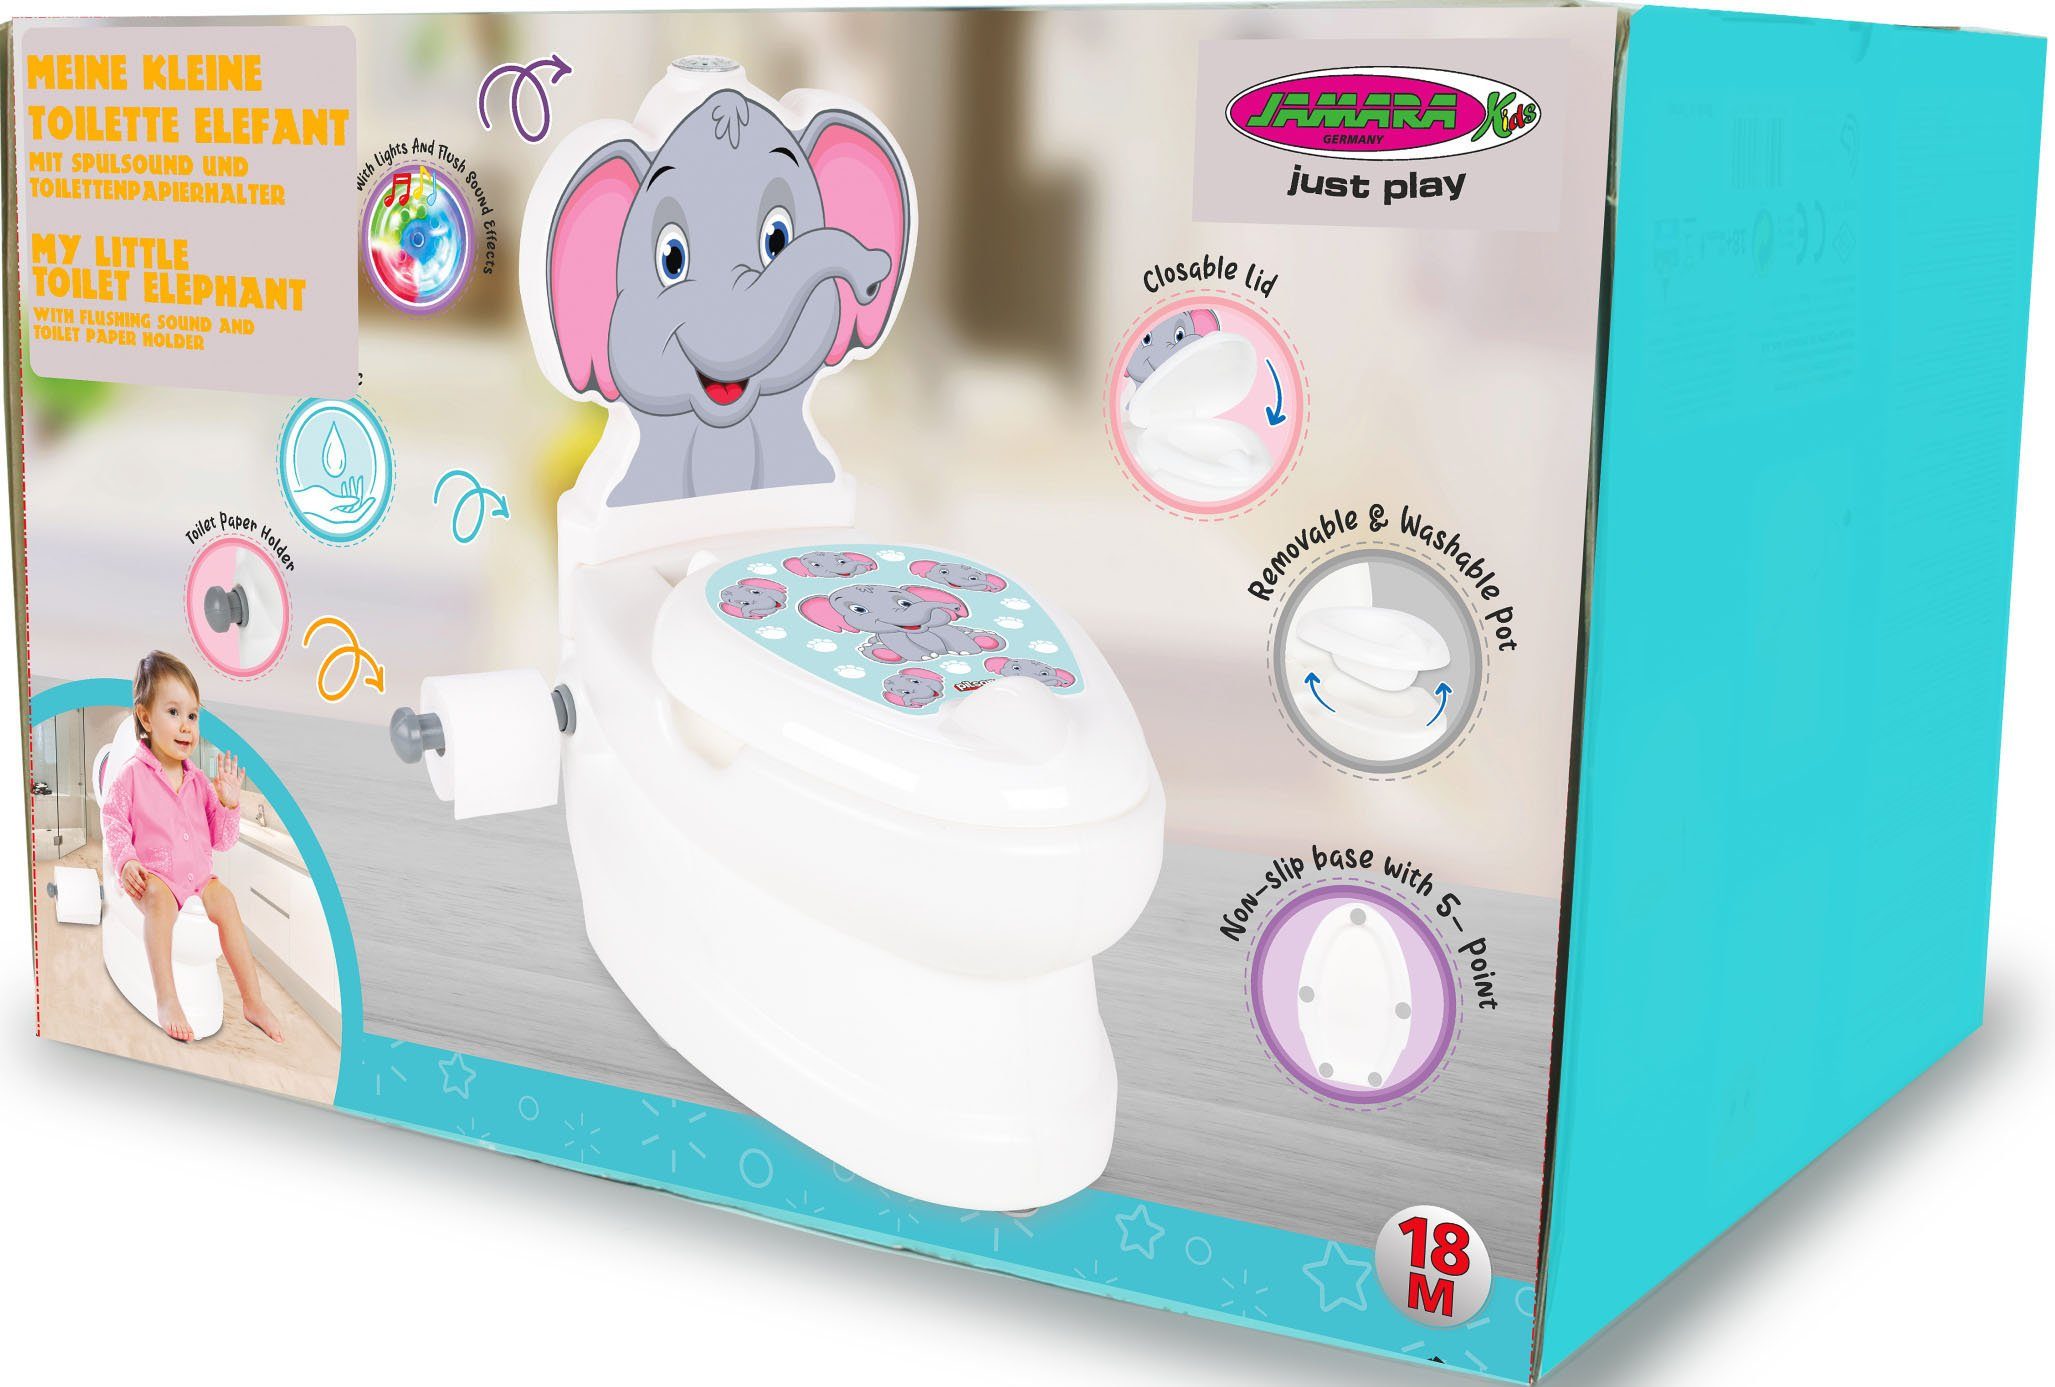 mit Toilette, kleine Meine Spülsound Toilettentrainer Toilettenpapierhalter Jamara und Elefant,